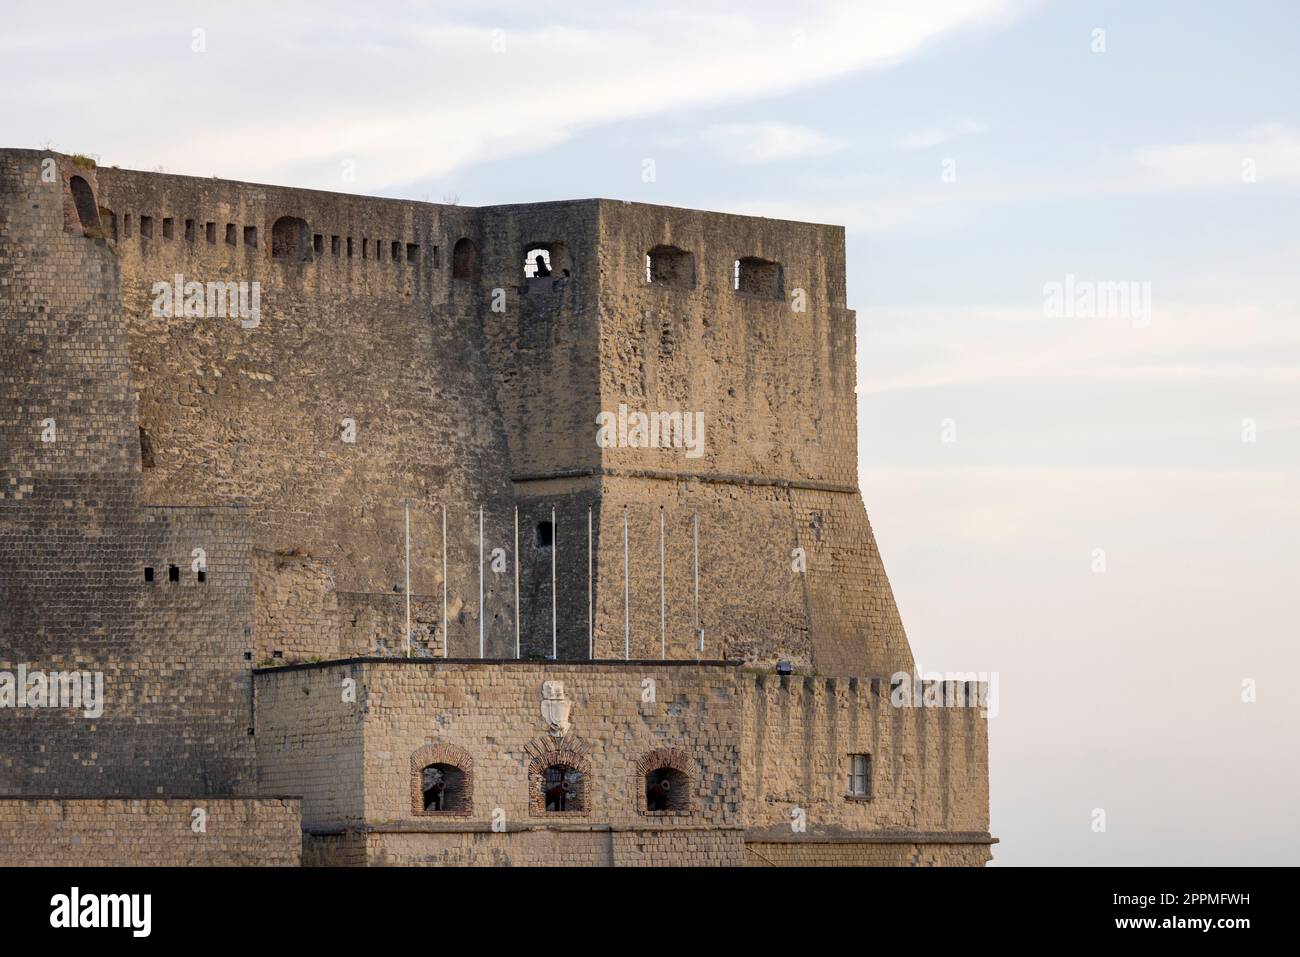 Castel dell'Ovo, mittelalterliche Burg auf einer kleinen Insel vor der Küste von Neapel, Italien Stockfoto